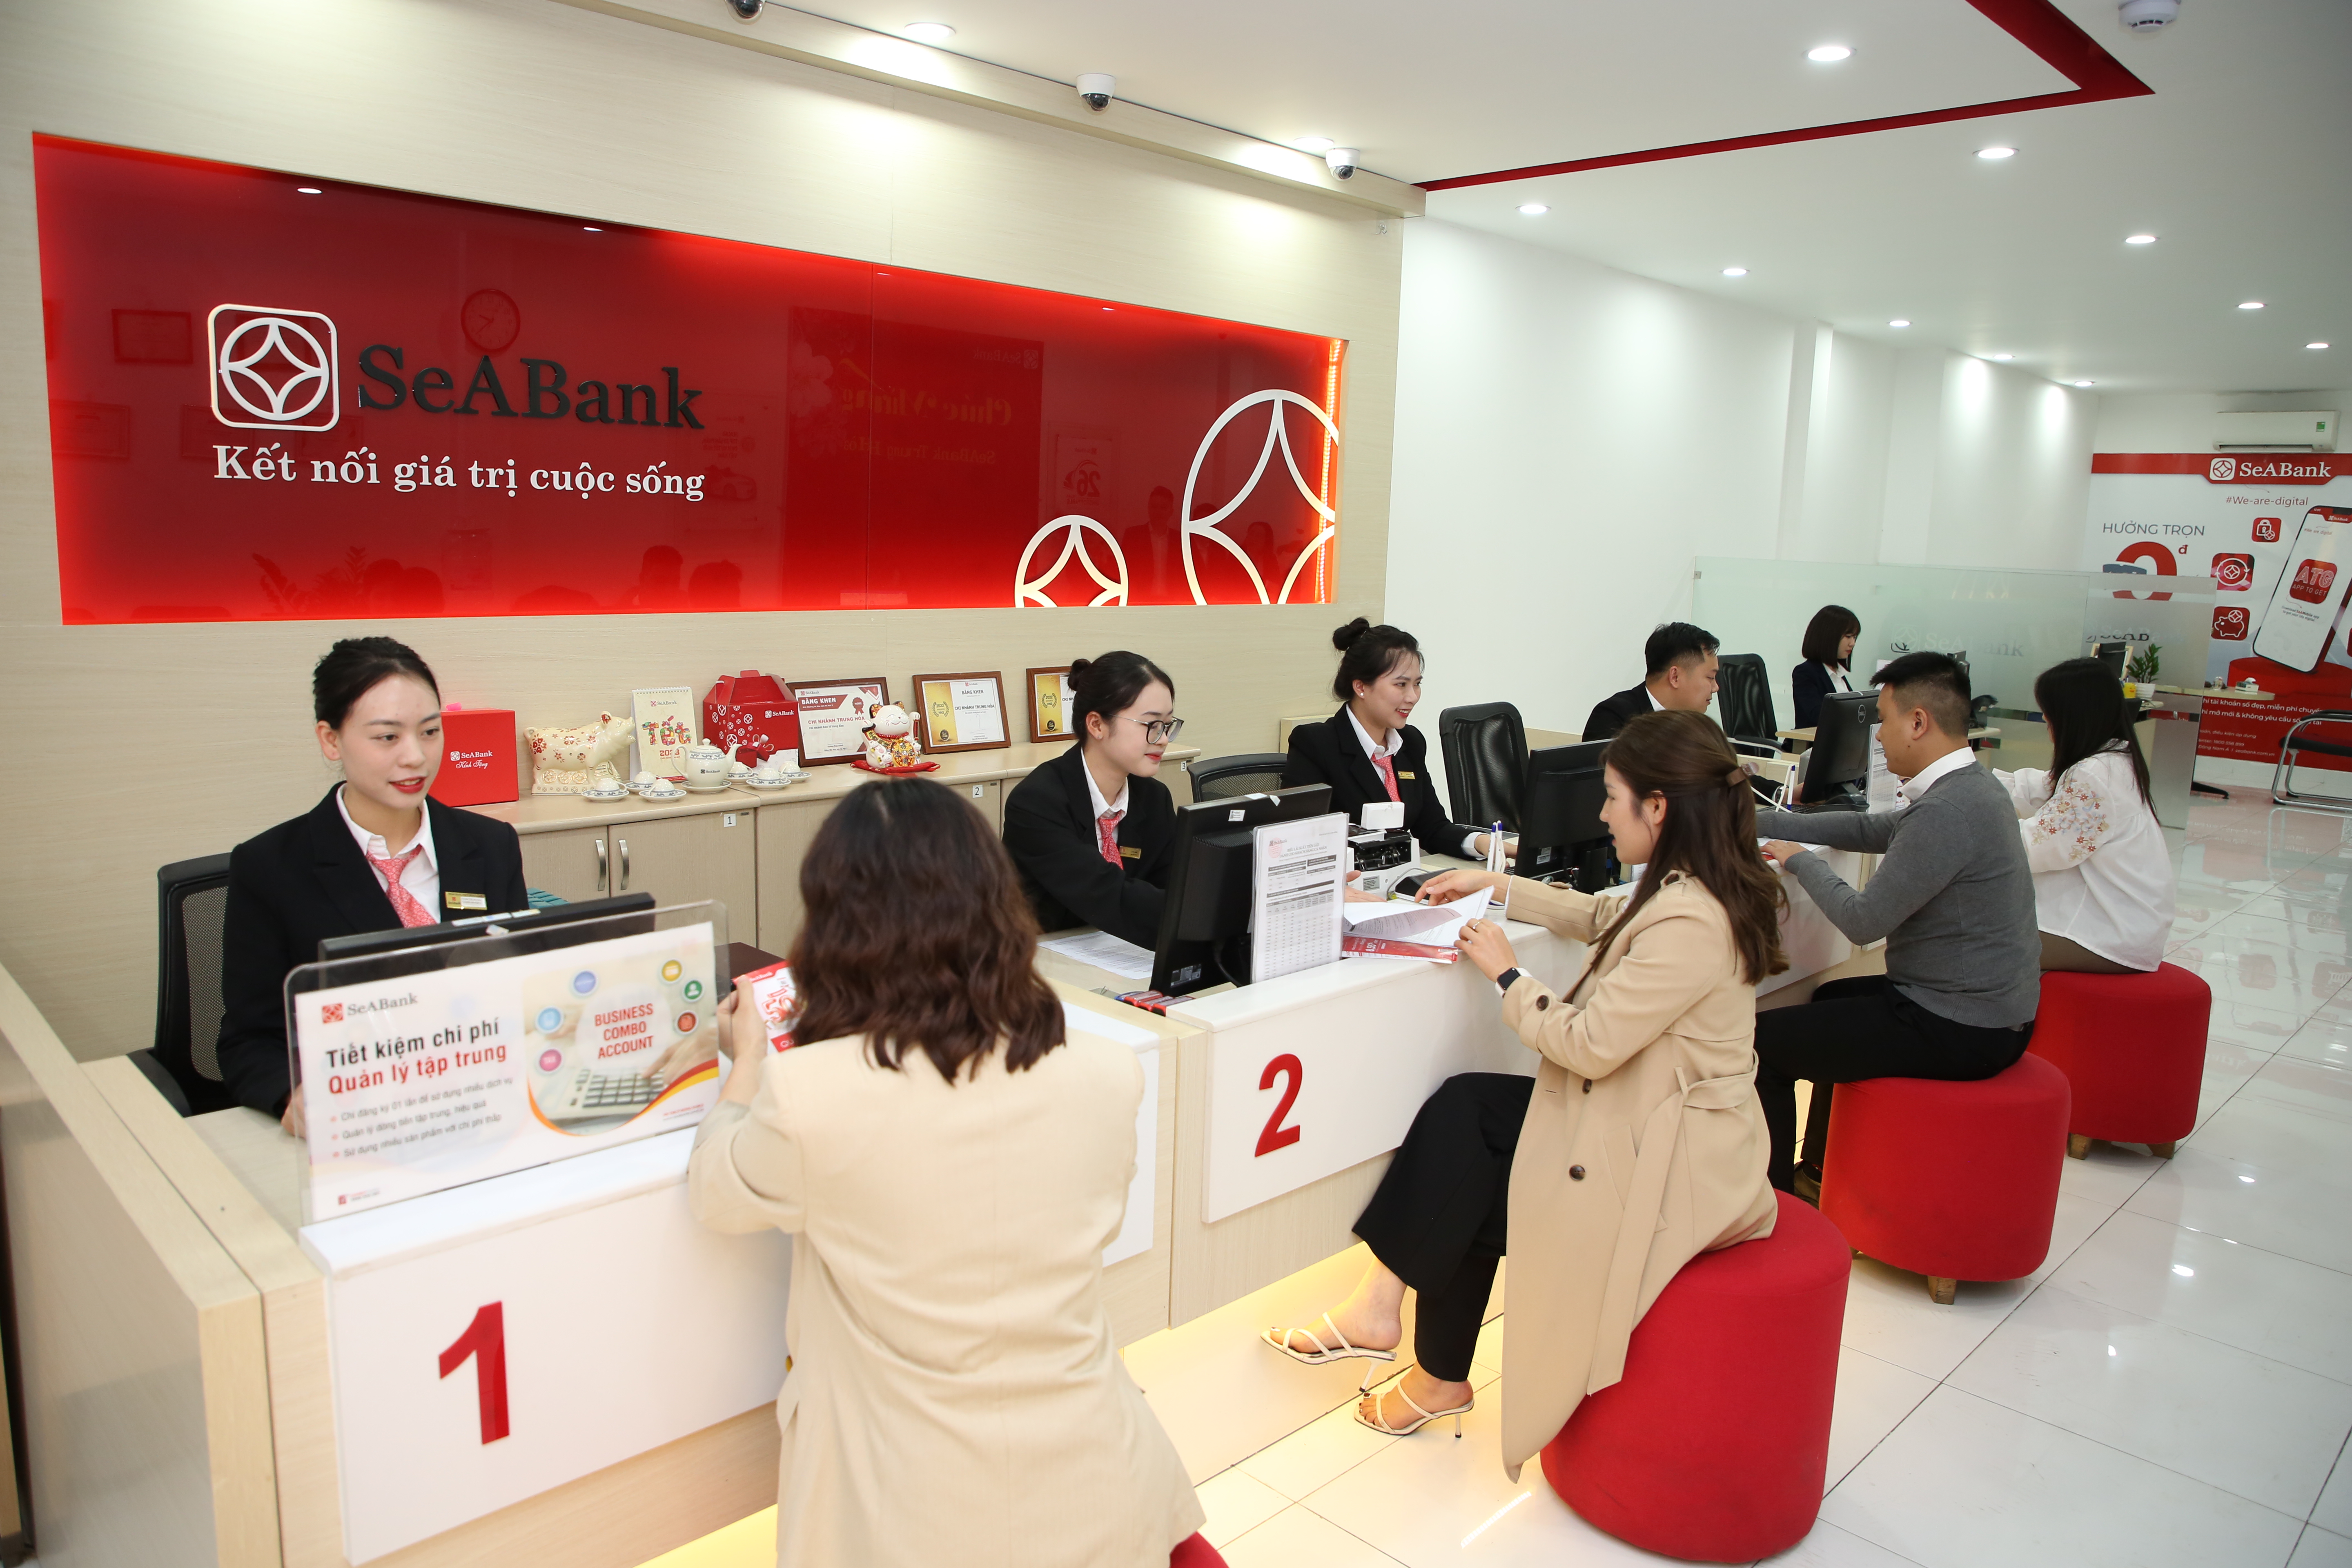 Kinh tế - SeABank giảm lãi suất tối đa 1%/năm, hỗ trợ khách hàng cá nhân tiếp cận vốn vay ưu đãi 